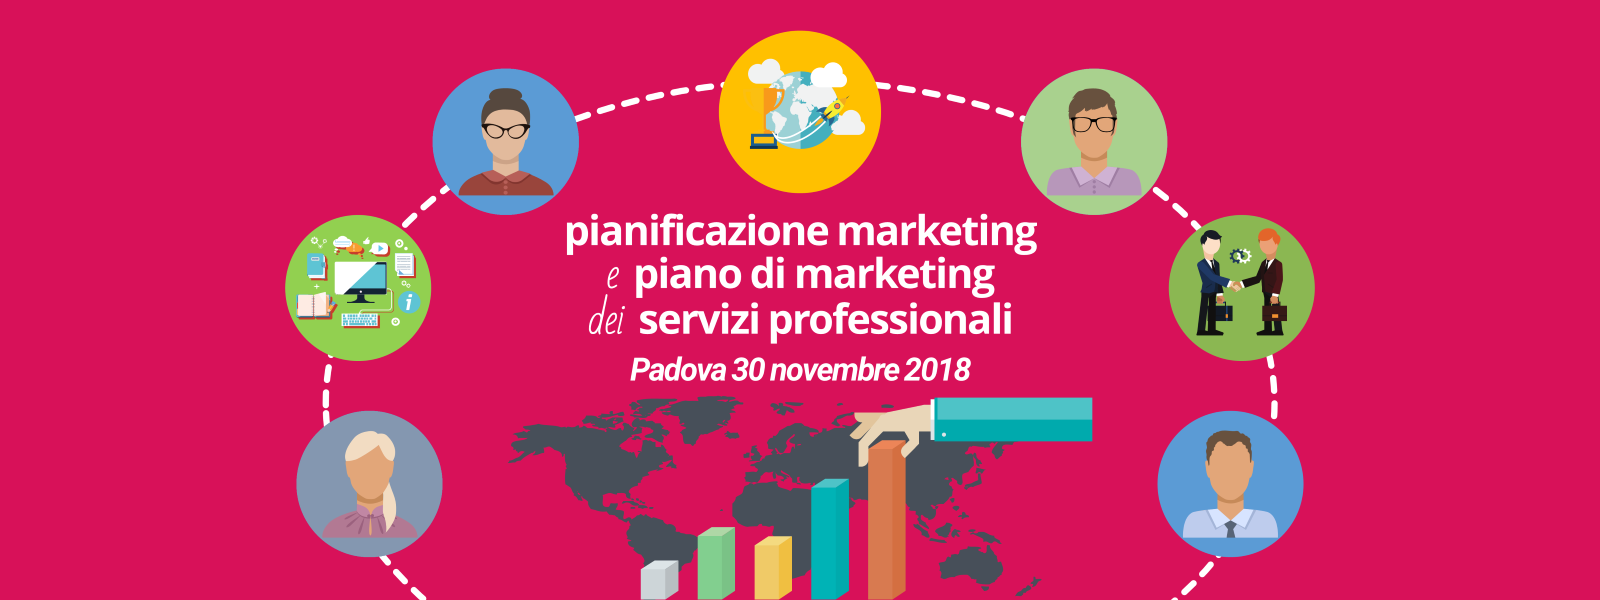 Padova 30 novembre 2018 - Edizione Corso Pianificazione Marketing e Piano di Marketing dei Servizi Professionali